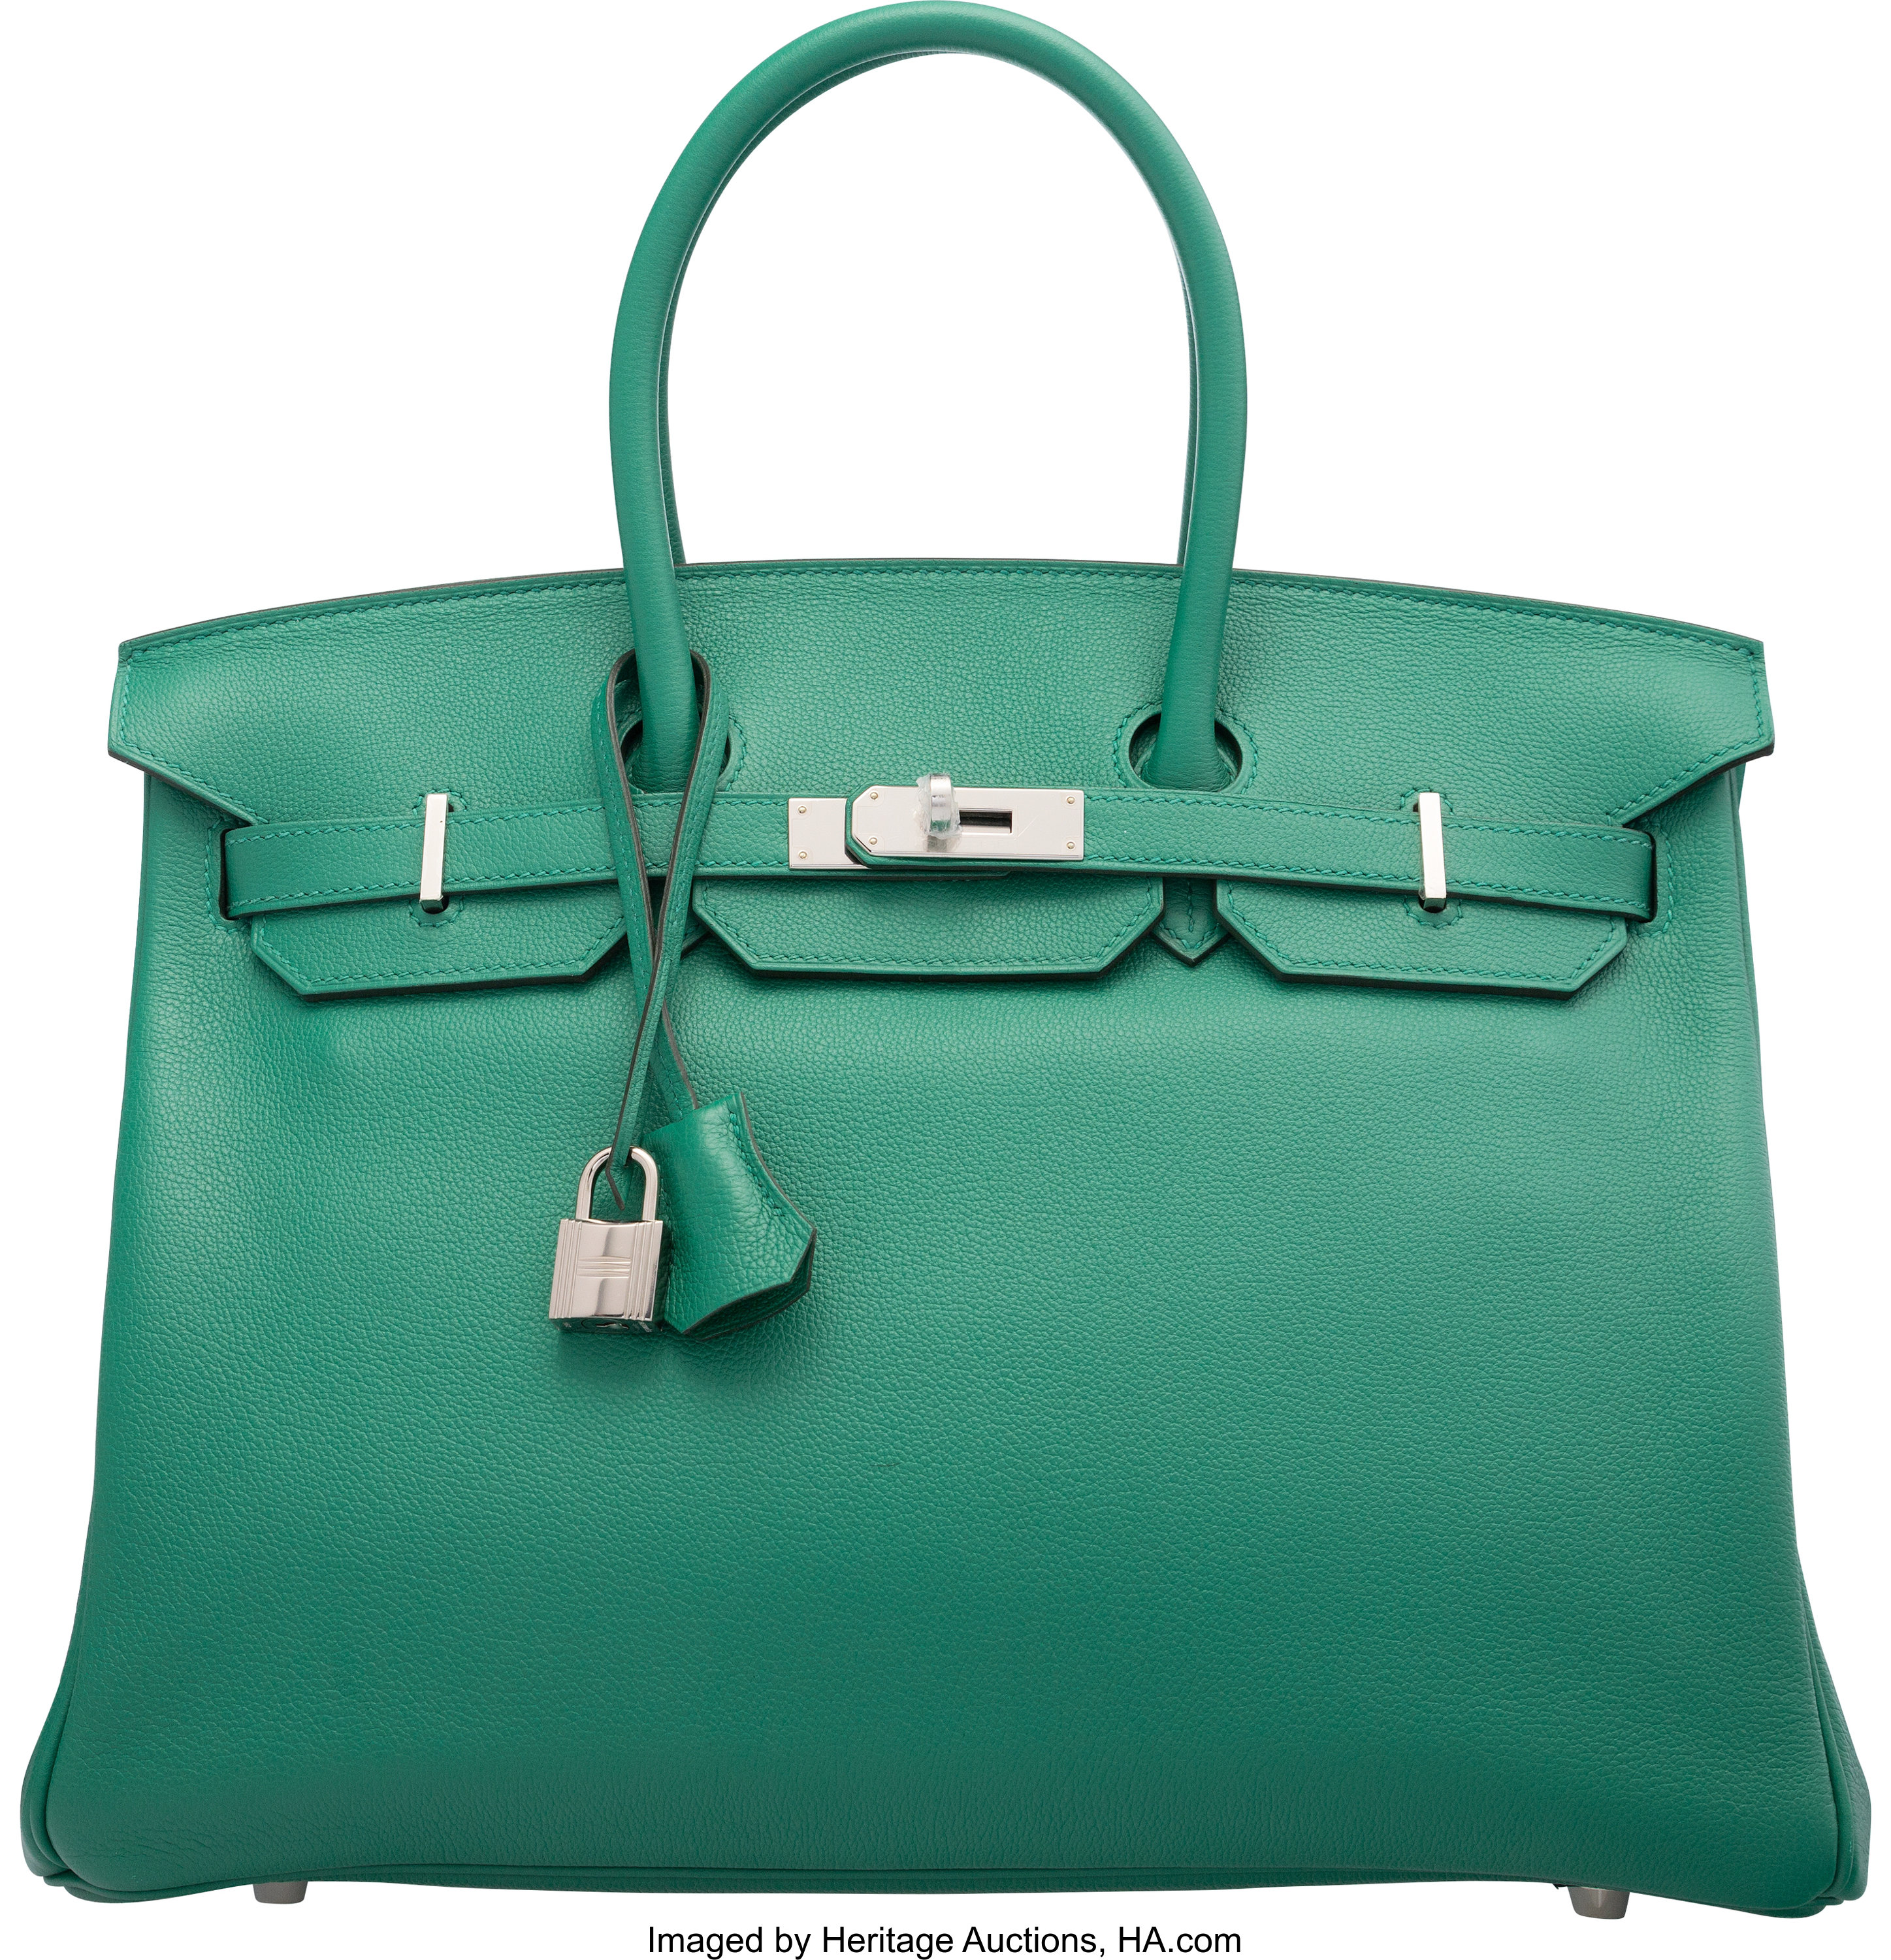 Hermès 35cm Vert Vertigo Evercolor Leather Birkin Bag with, Lot #58263